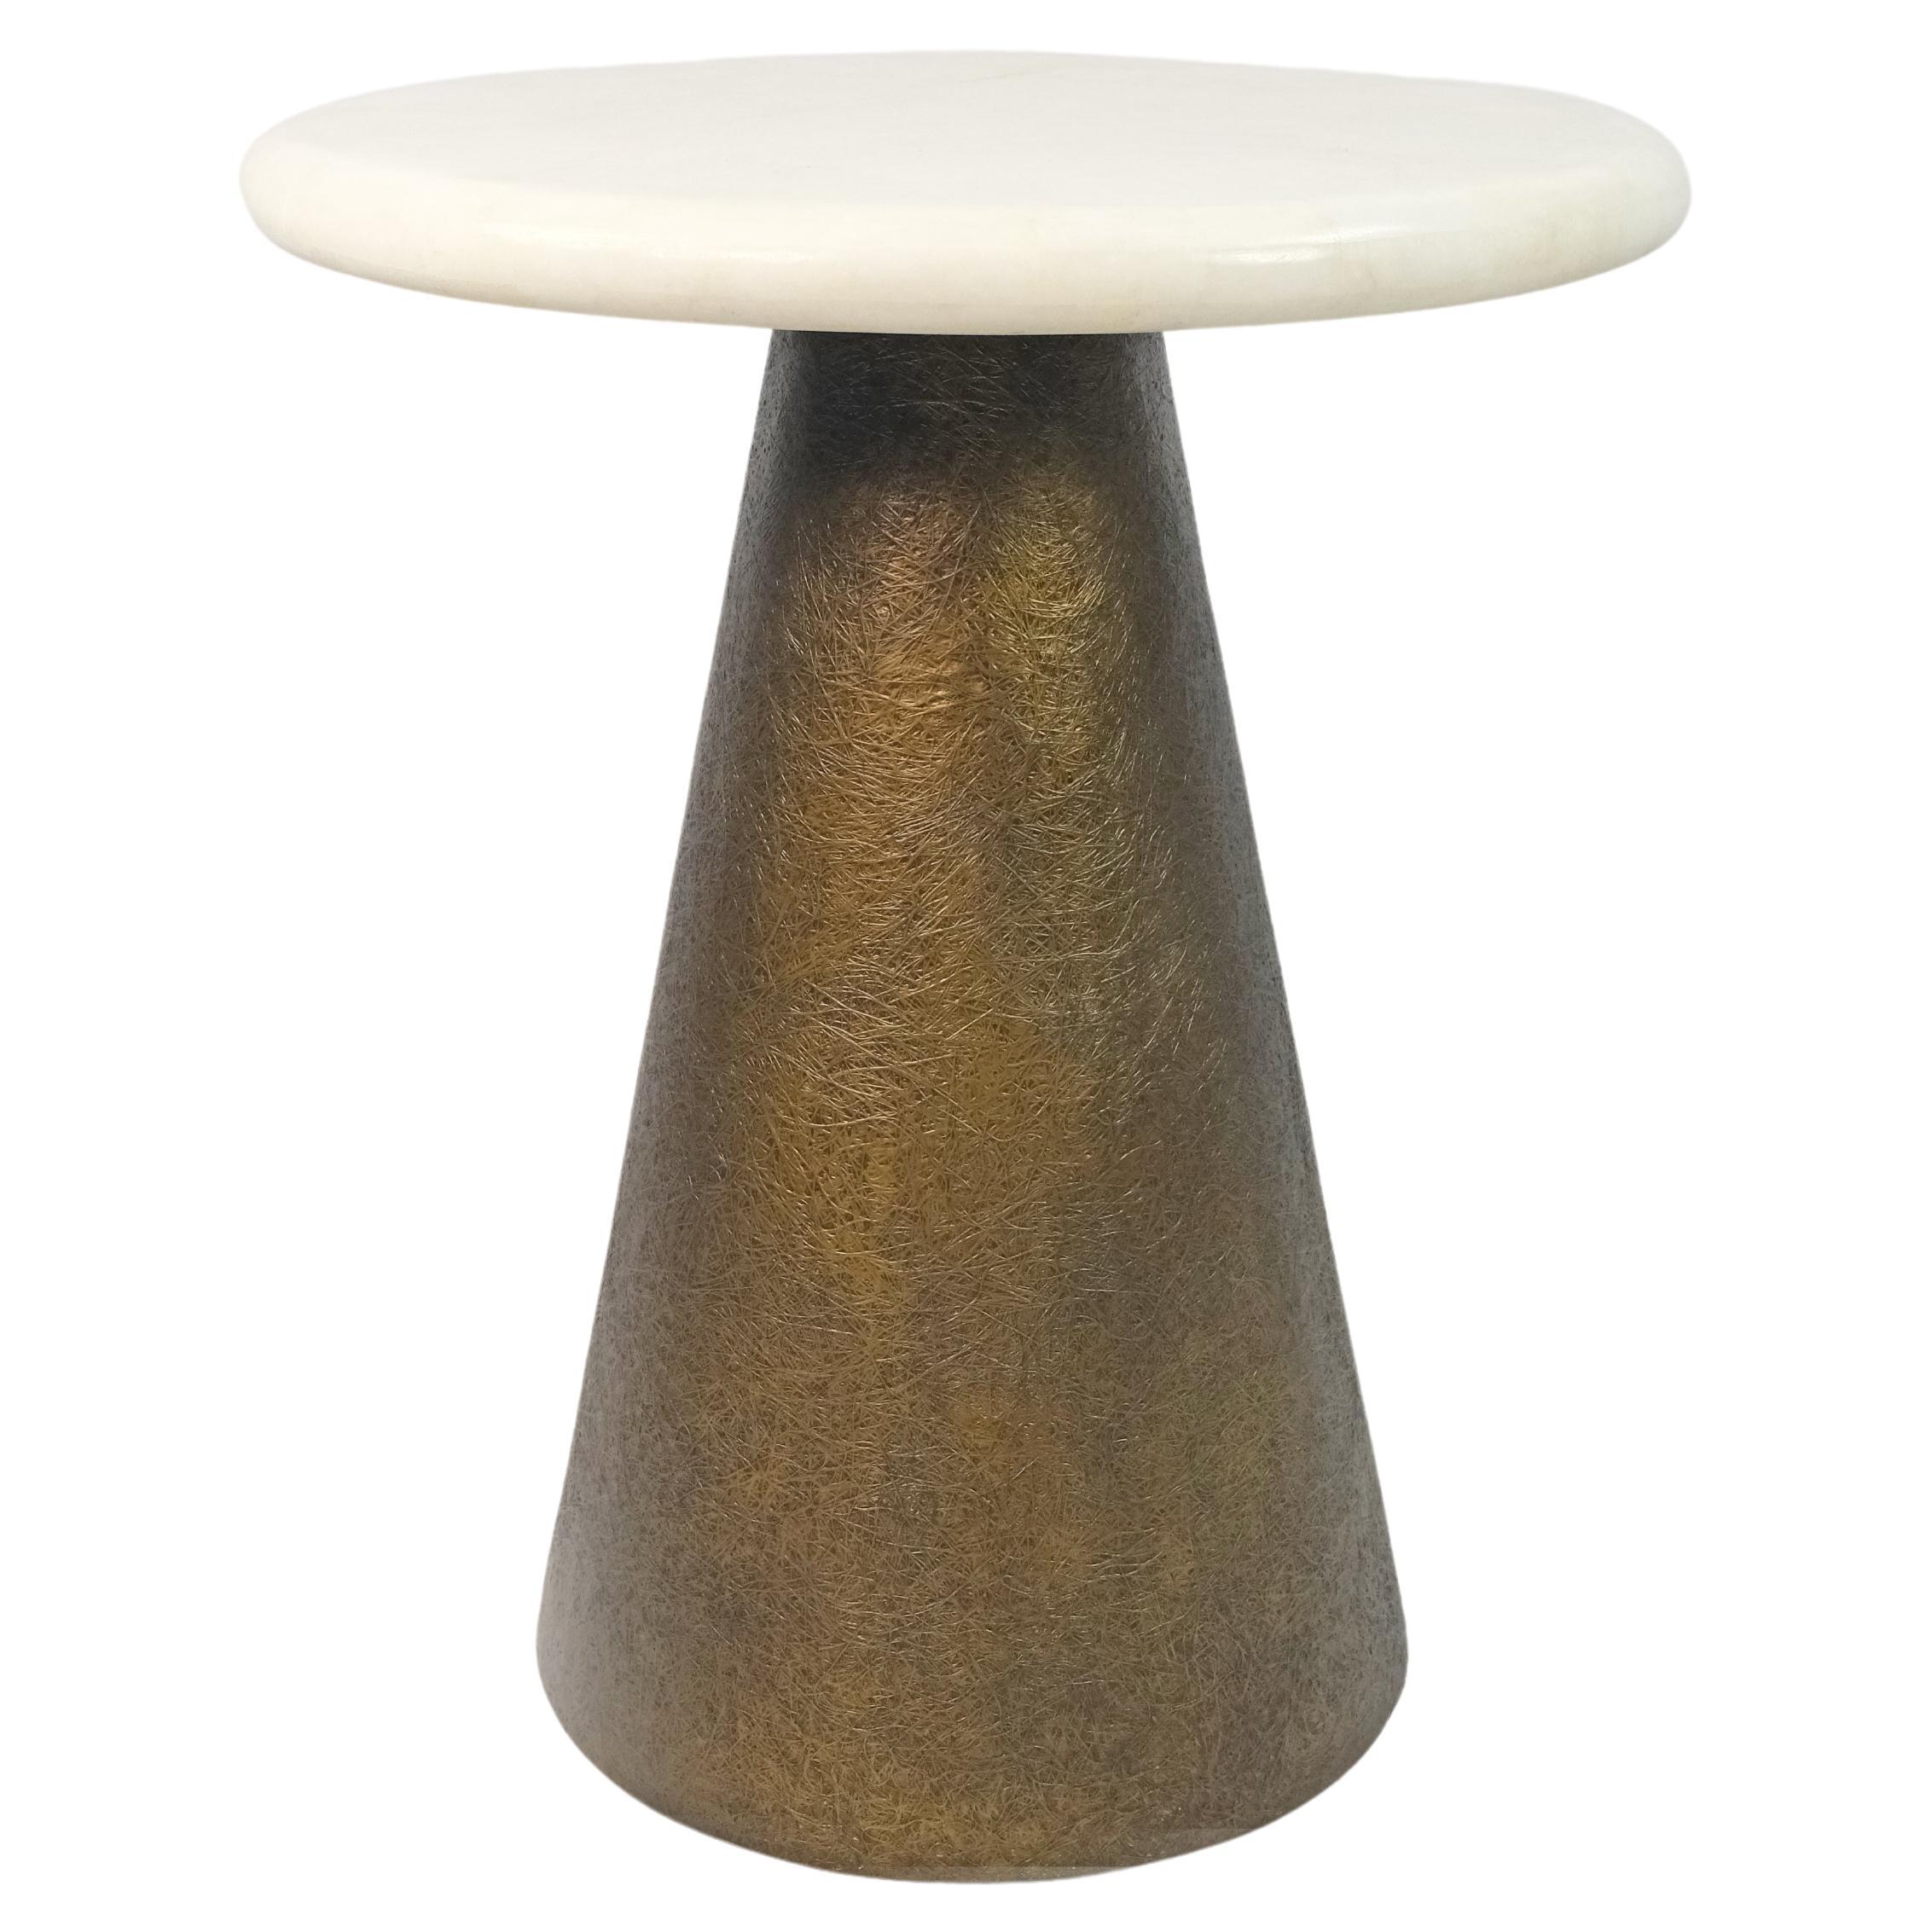 Table d'appoint en cristal de roche blanc avec une base bronzée